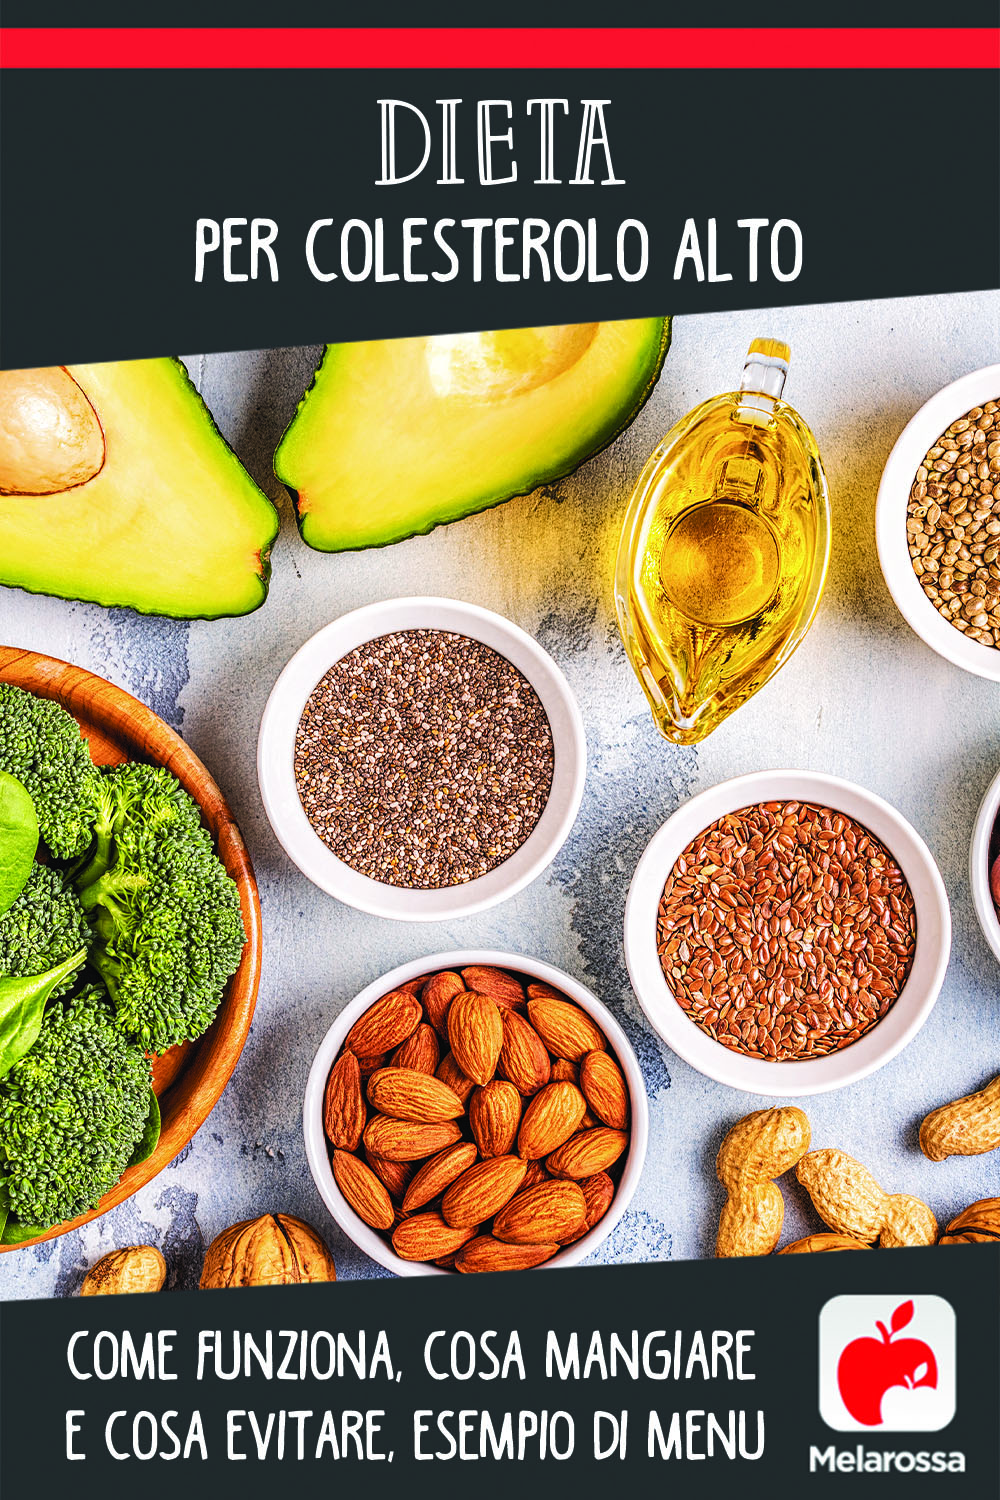 Dieta per colesterolo alto: cosa mangiare e cosa evitare, esempio di menu